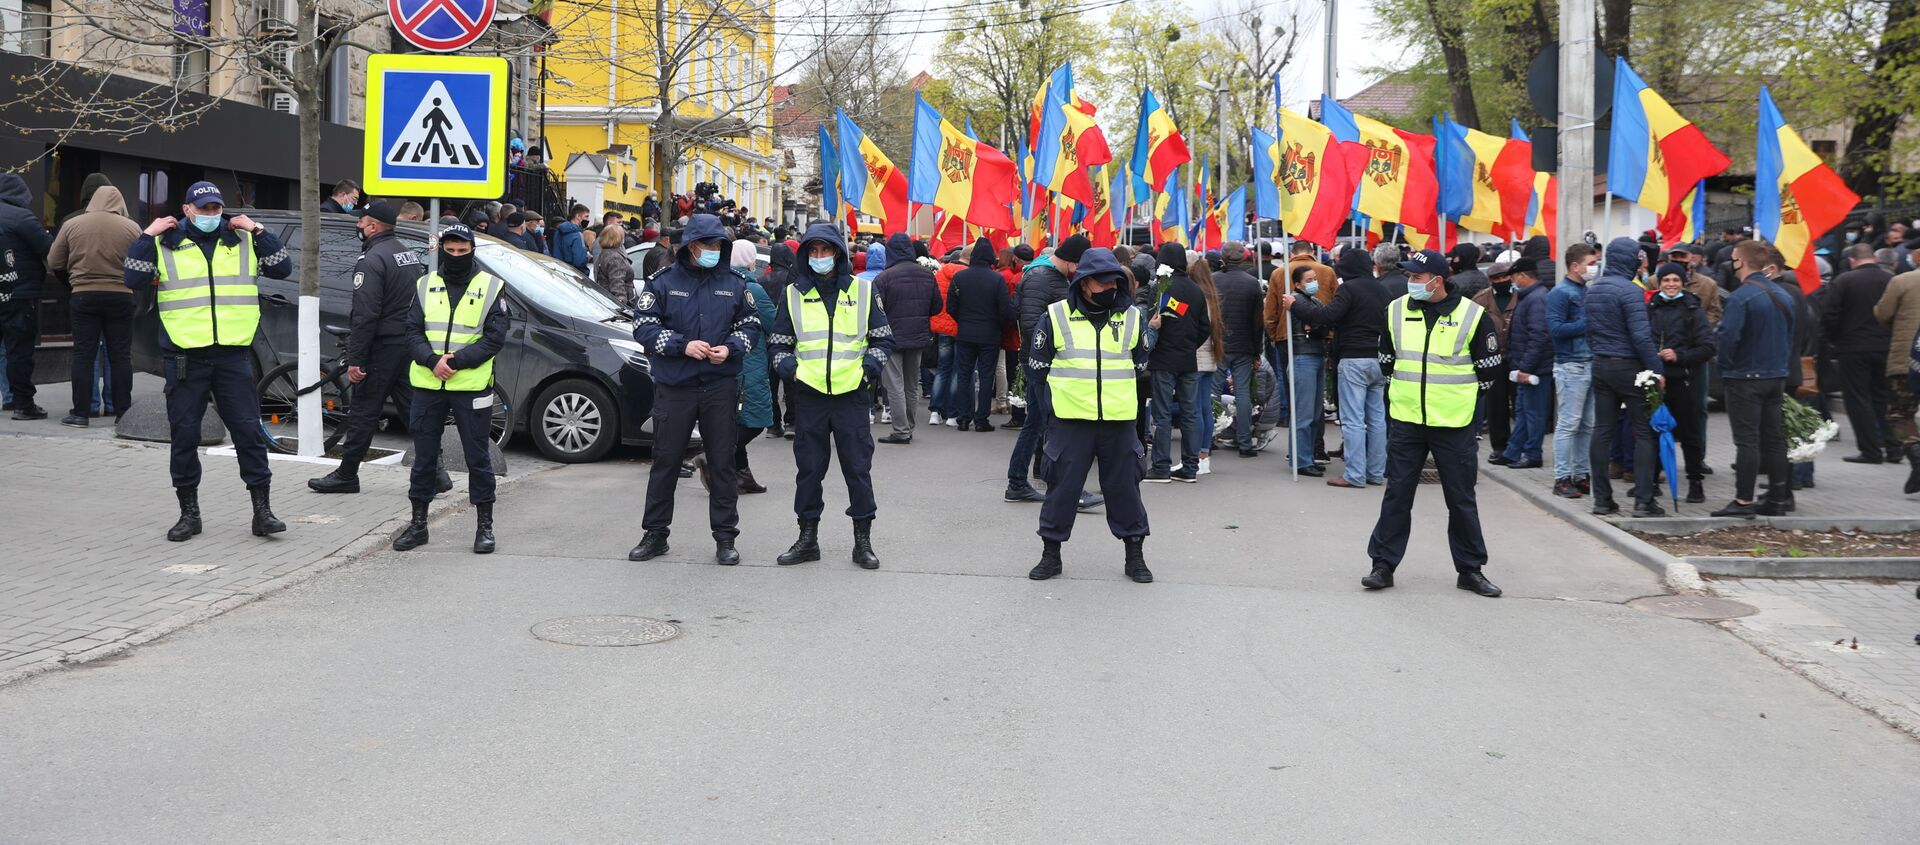 Protest în fața Curții Constituționale. 28 aprilie 2021 - Sputnik Молдова, 1920, 28.04.2021